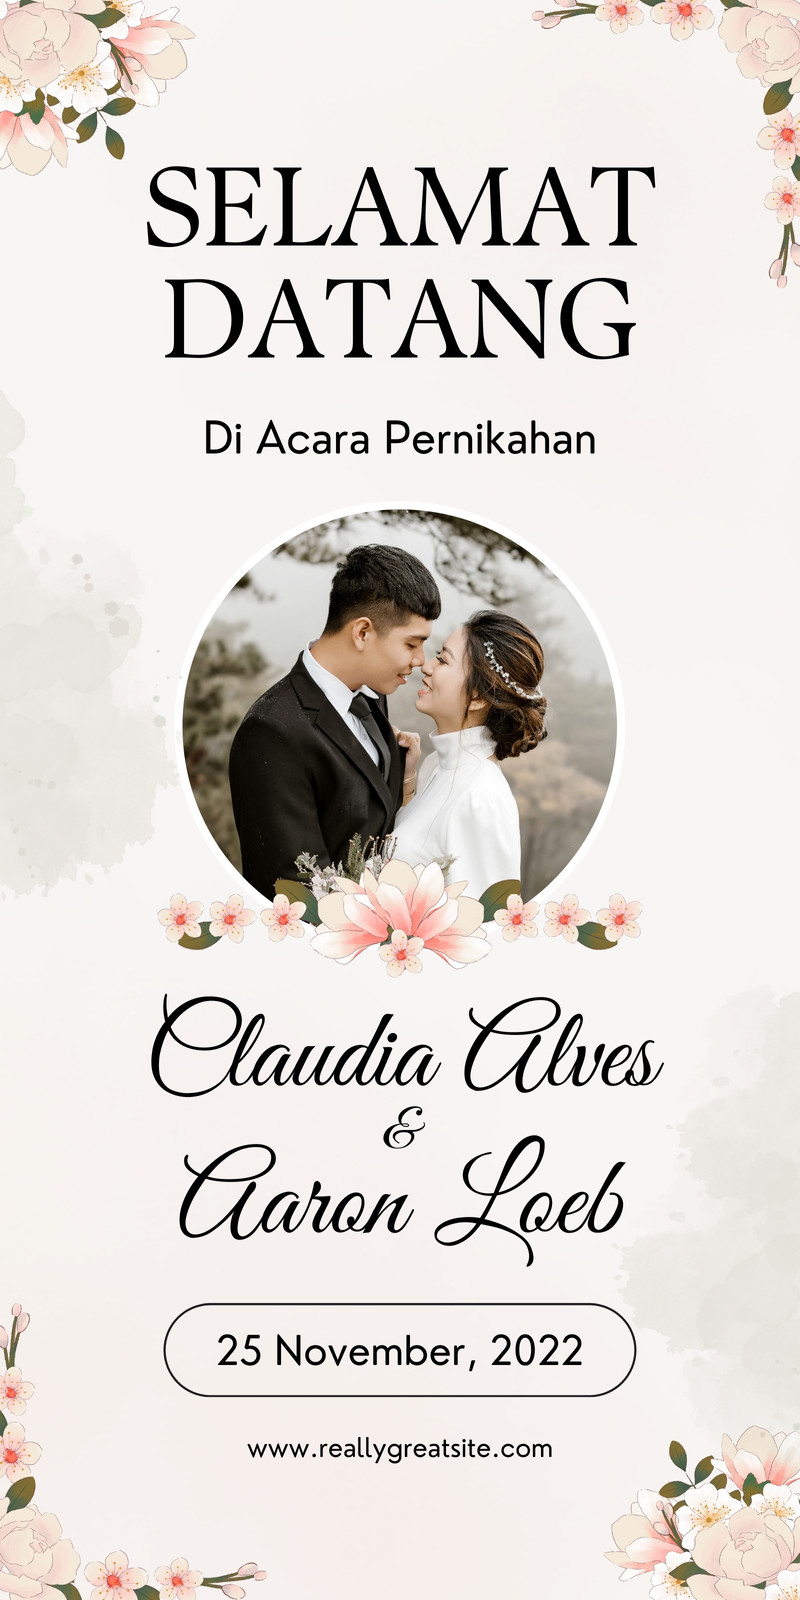 Contoh Spanduk Banner Pernikahan Sexiz Pix Images And Photos Finder